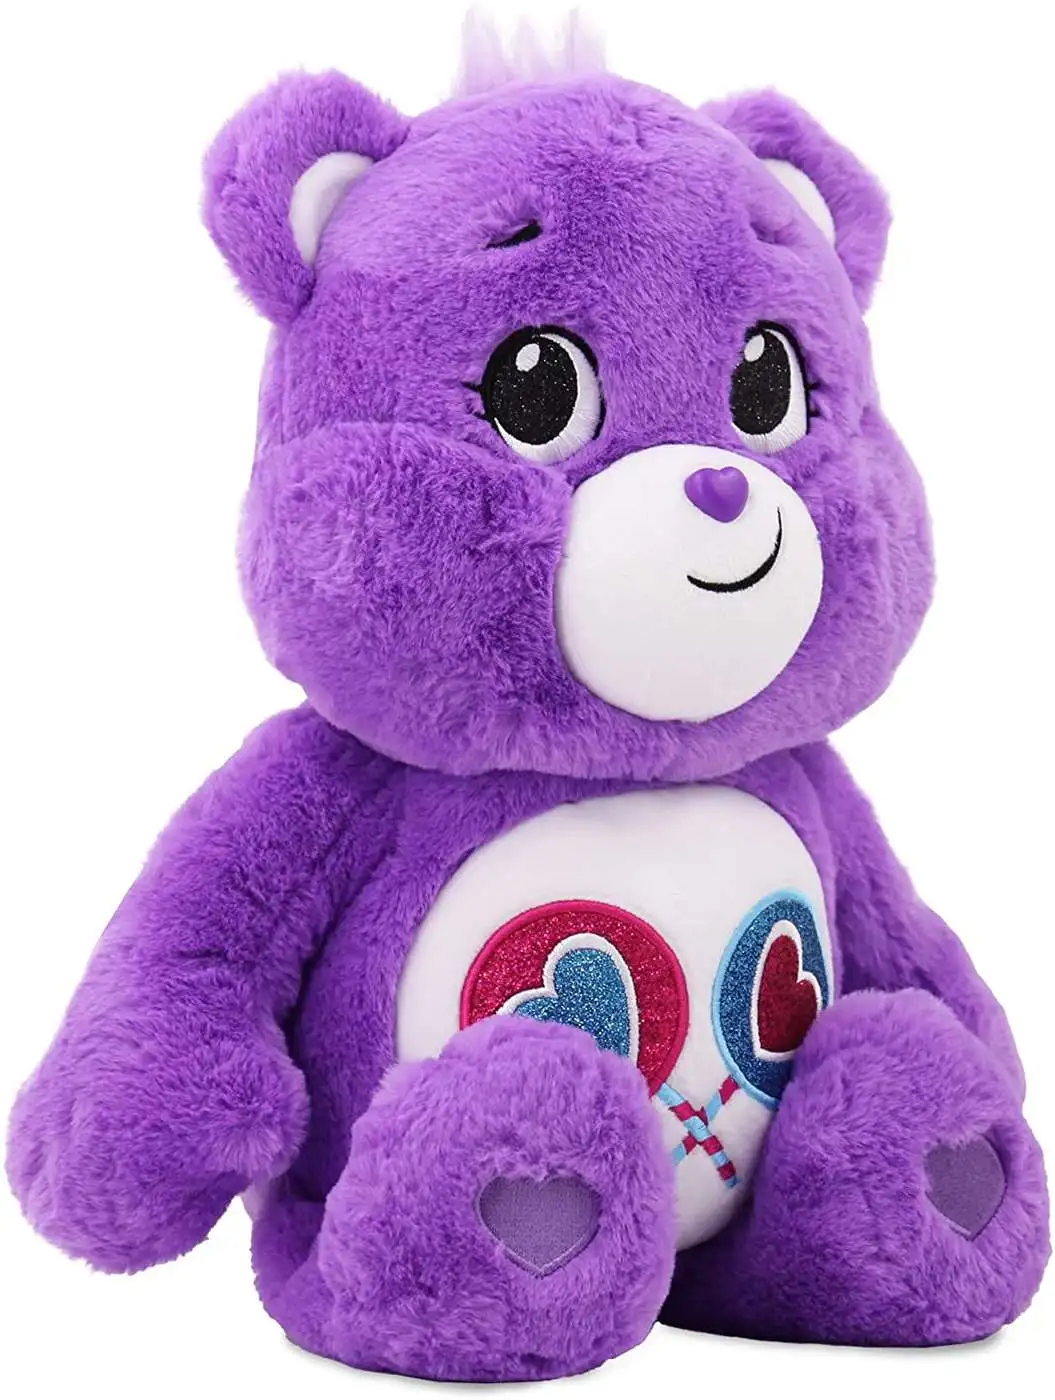 Care Bears Share Bear 18 Plush Basic Fun - ToyWiz